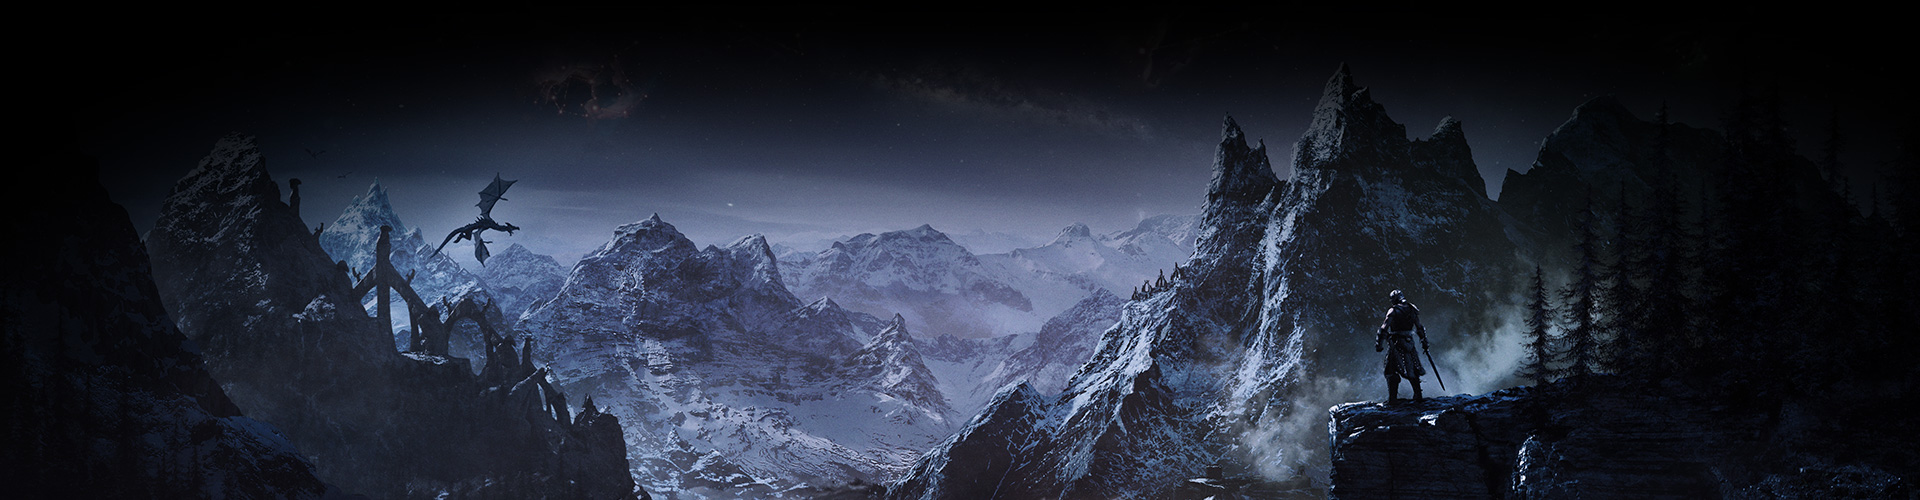 Un personnage regarde une vallée de montagnes enneigées tandis qu’un dragon plane au-dessus.